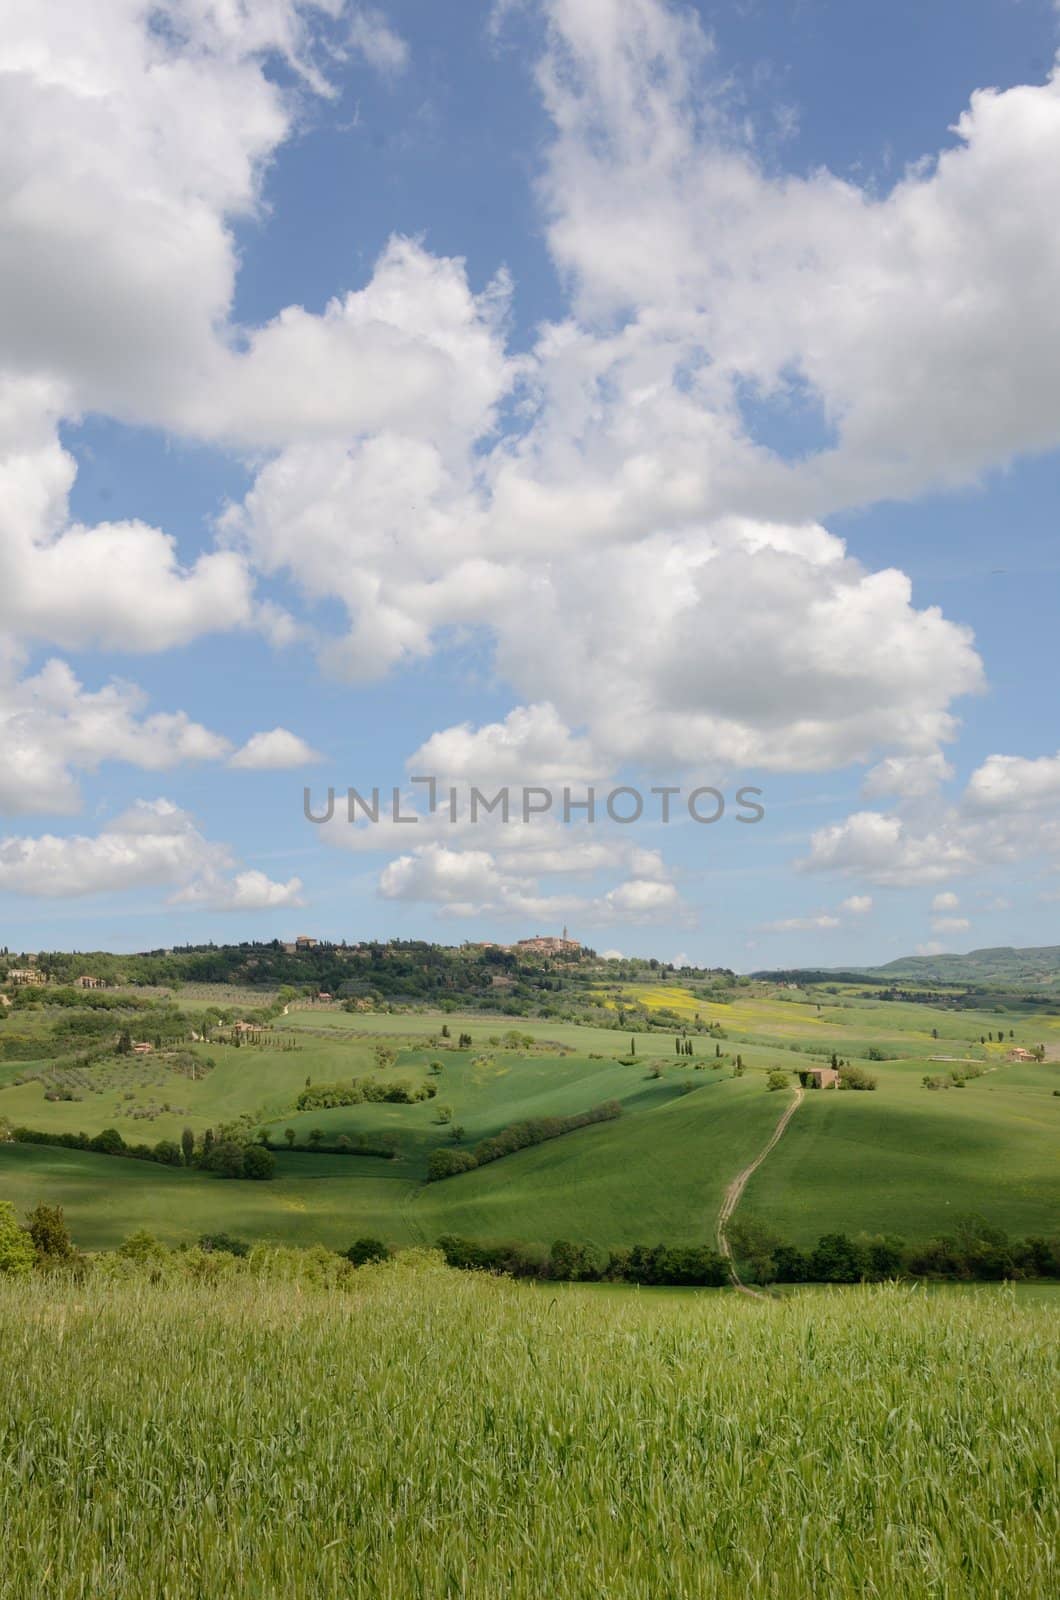 The landscape odf the "Crete Senesi" in Tuscany